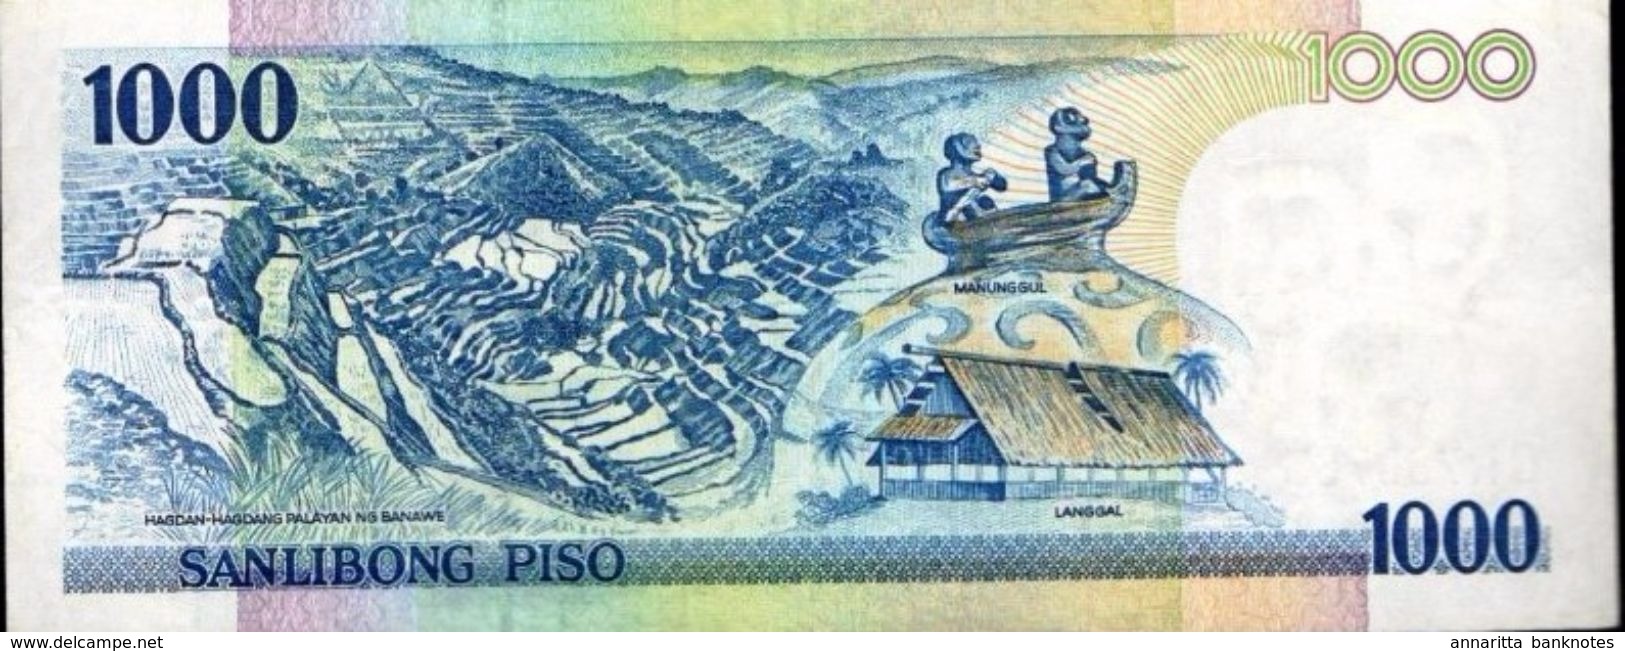 PHILIPPINES 1000 PISO (PESOS) 2006 P-197g XF/AU S/N QR788763 [PH1051g] - Philippines